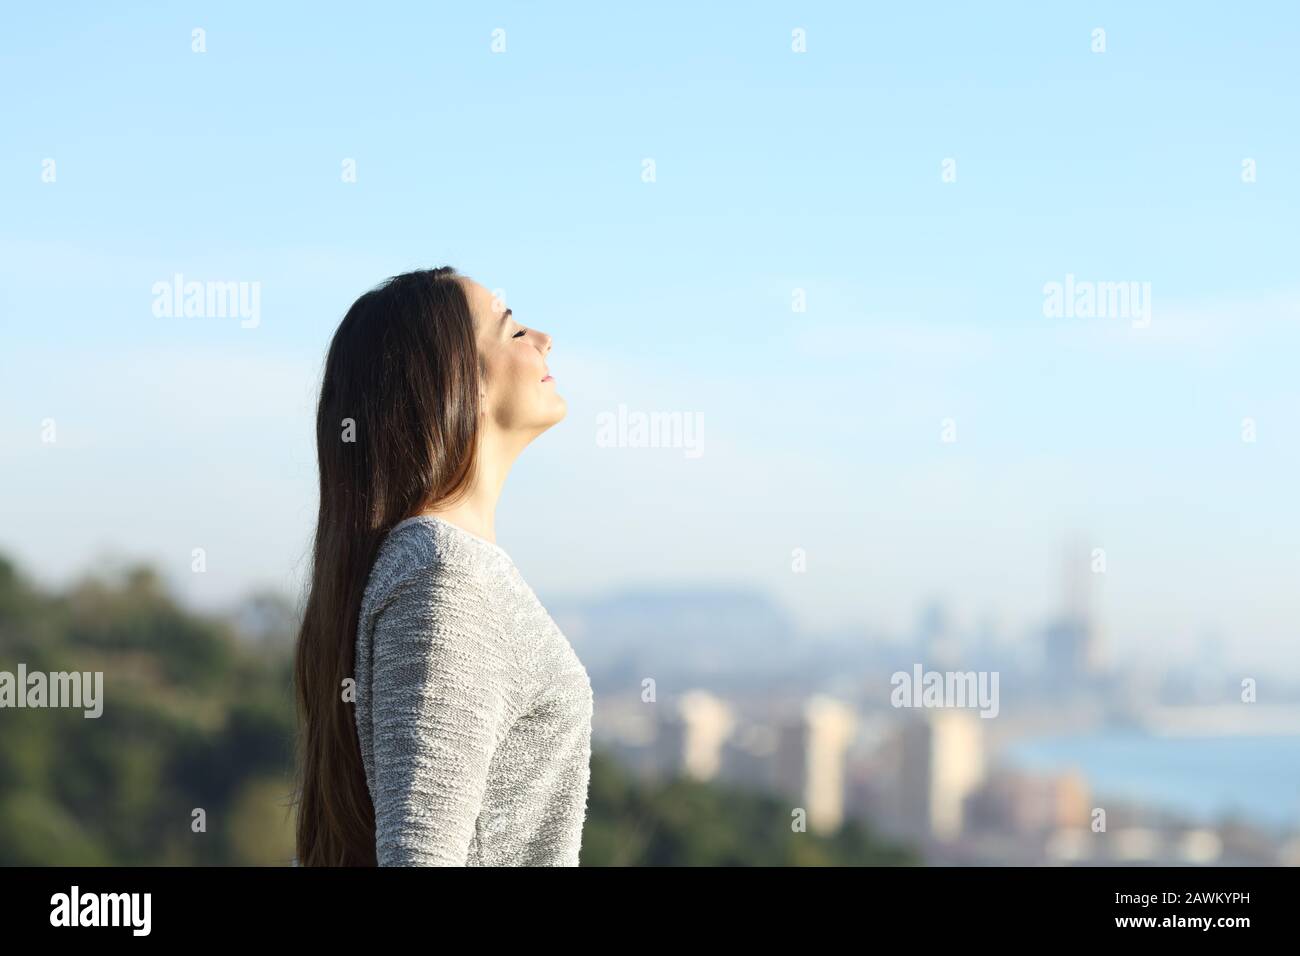 Vue latérale portrait d'une fille respirante l'air frais avec une ville en arrière-plan Banque D'Images